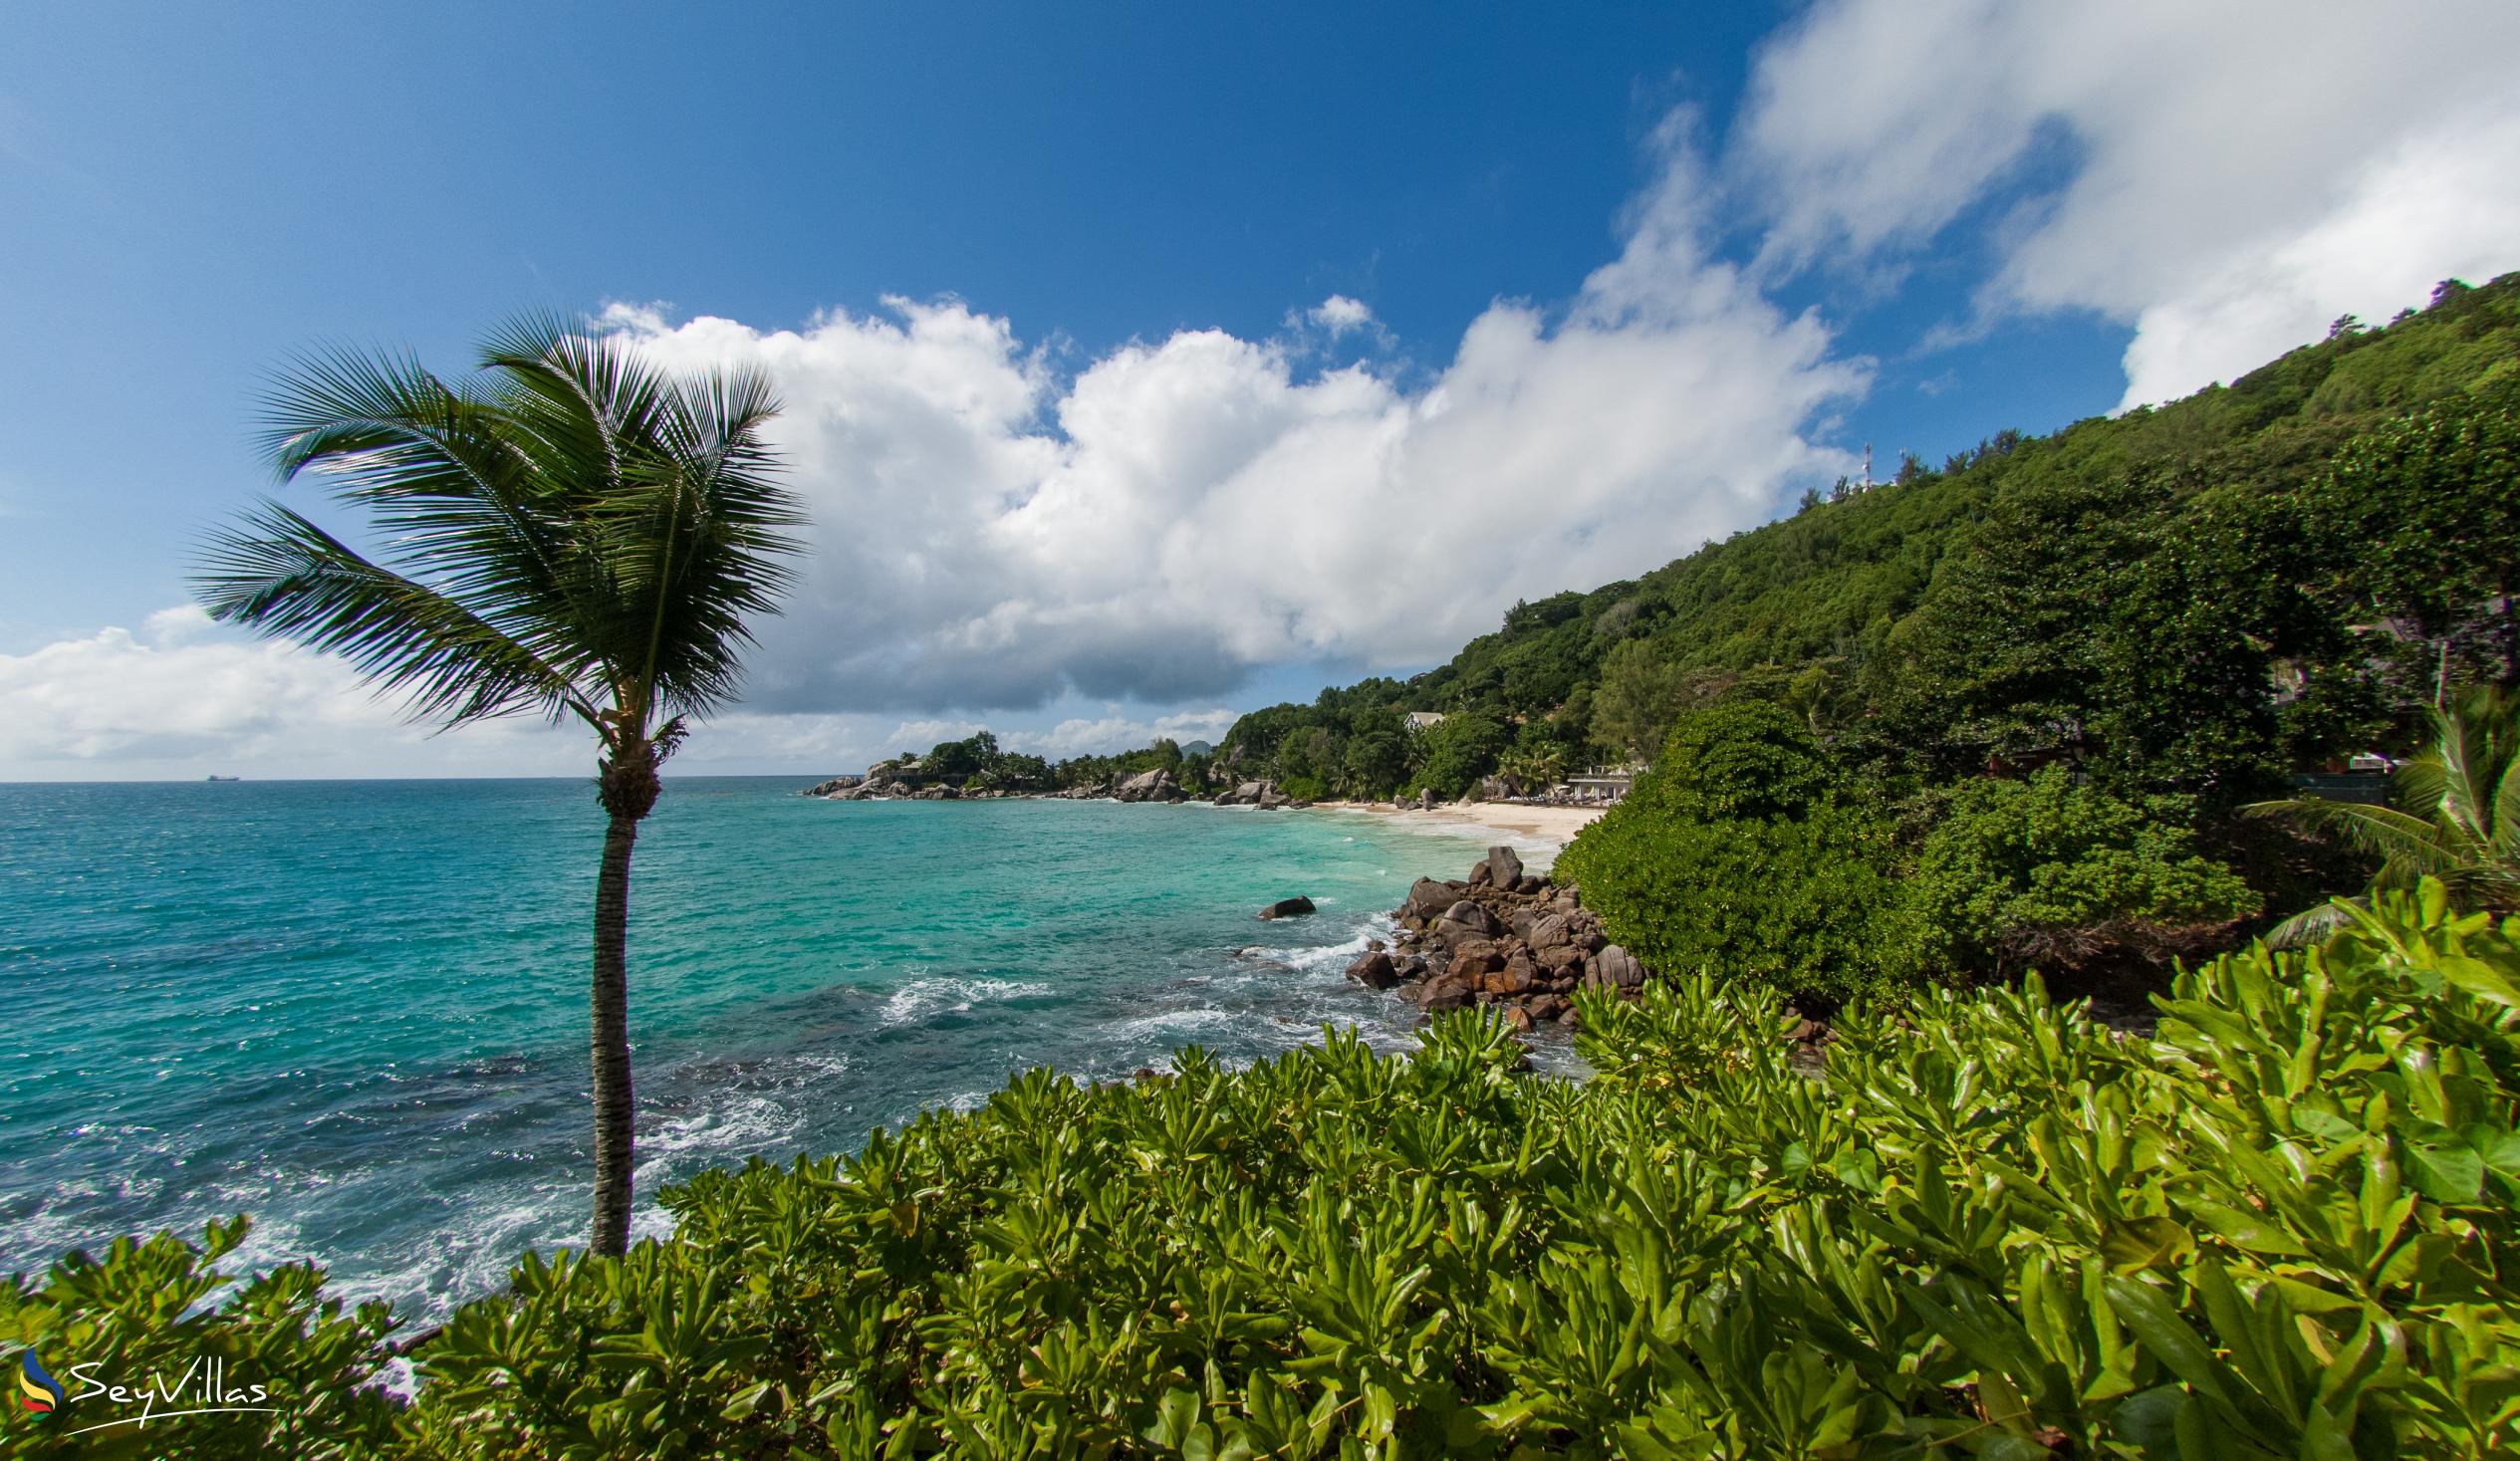 Foto 19: Carana Beach Hotel - Location - Mahé (Seychelles)